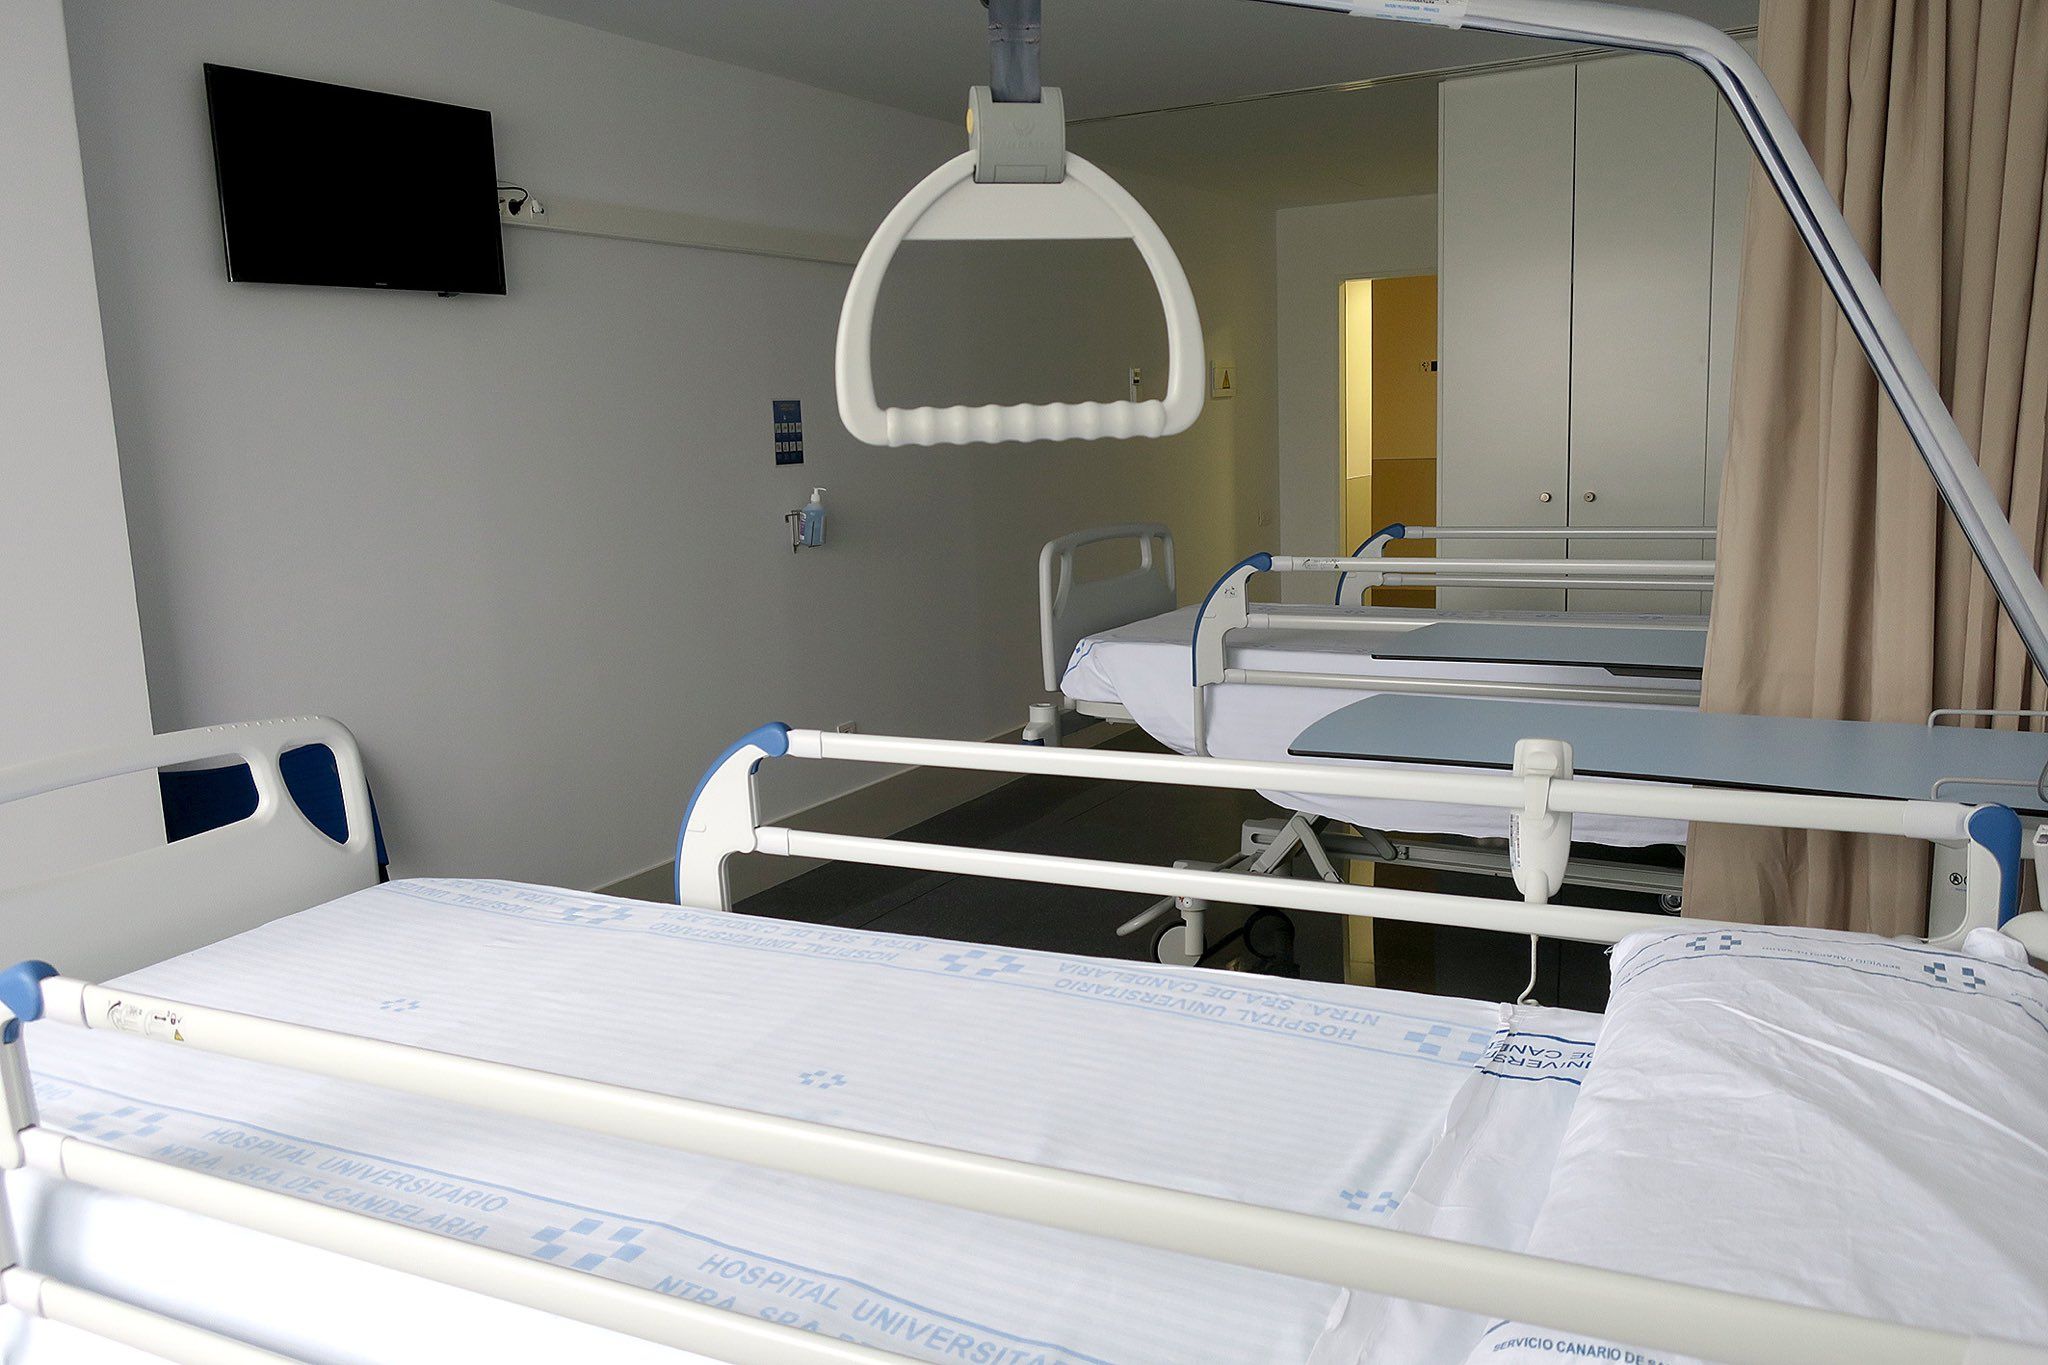 Una de las habitaciones del hospital puertorrealeño con tres camas en una imagen de archivo.